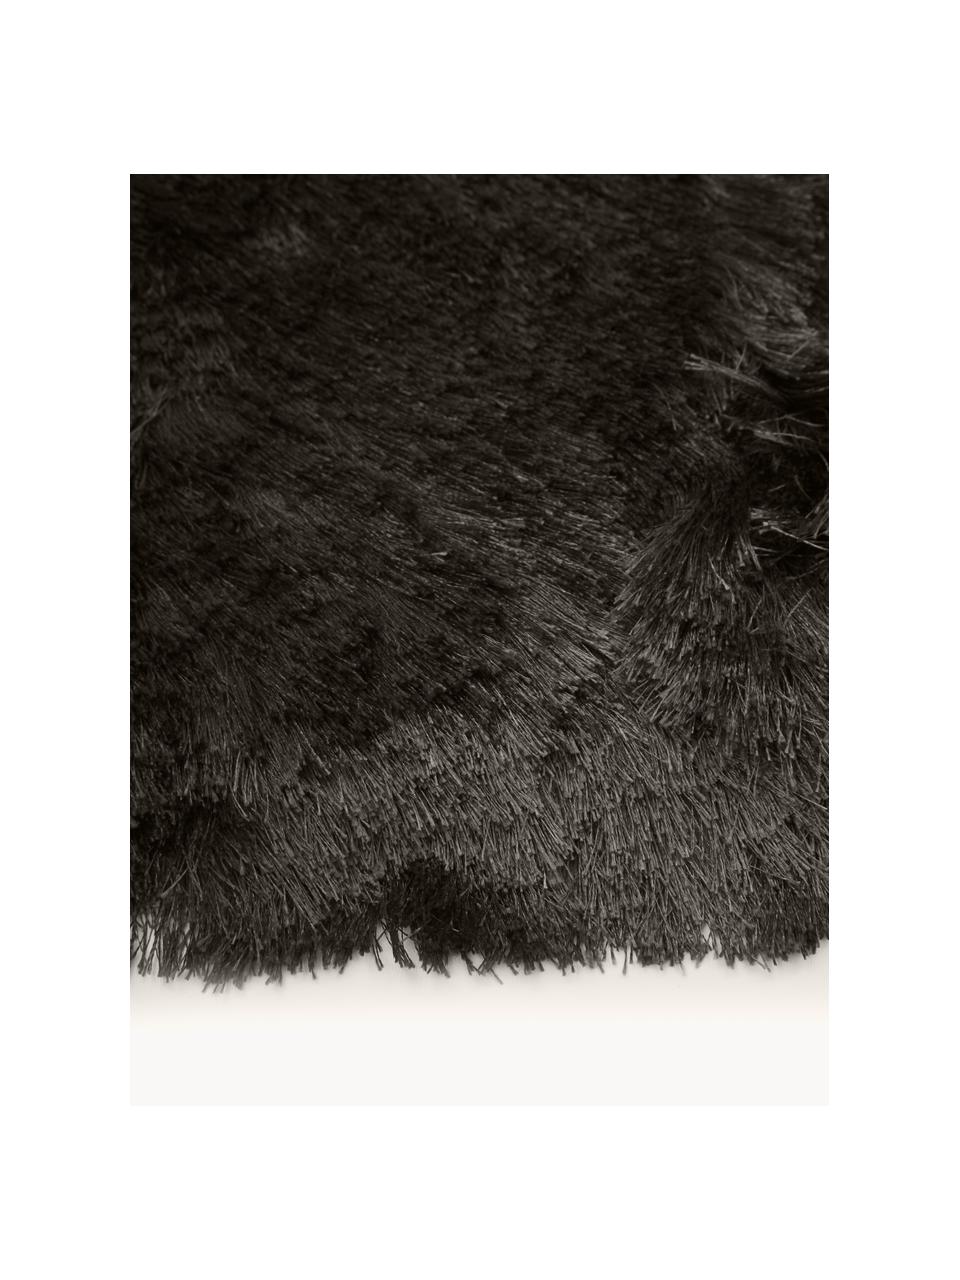 Glänzender Hochflor-Teppich Jimmy, rund, Flor: 100% Polyester, Anthrazit, Ø 120 cm (Grösse S)